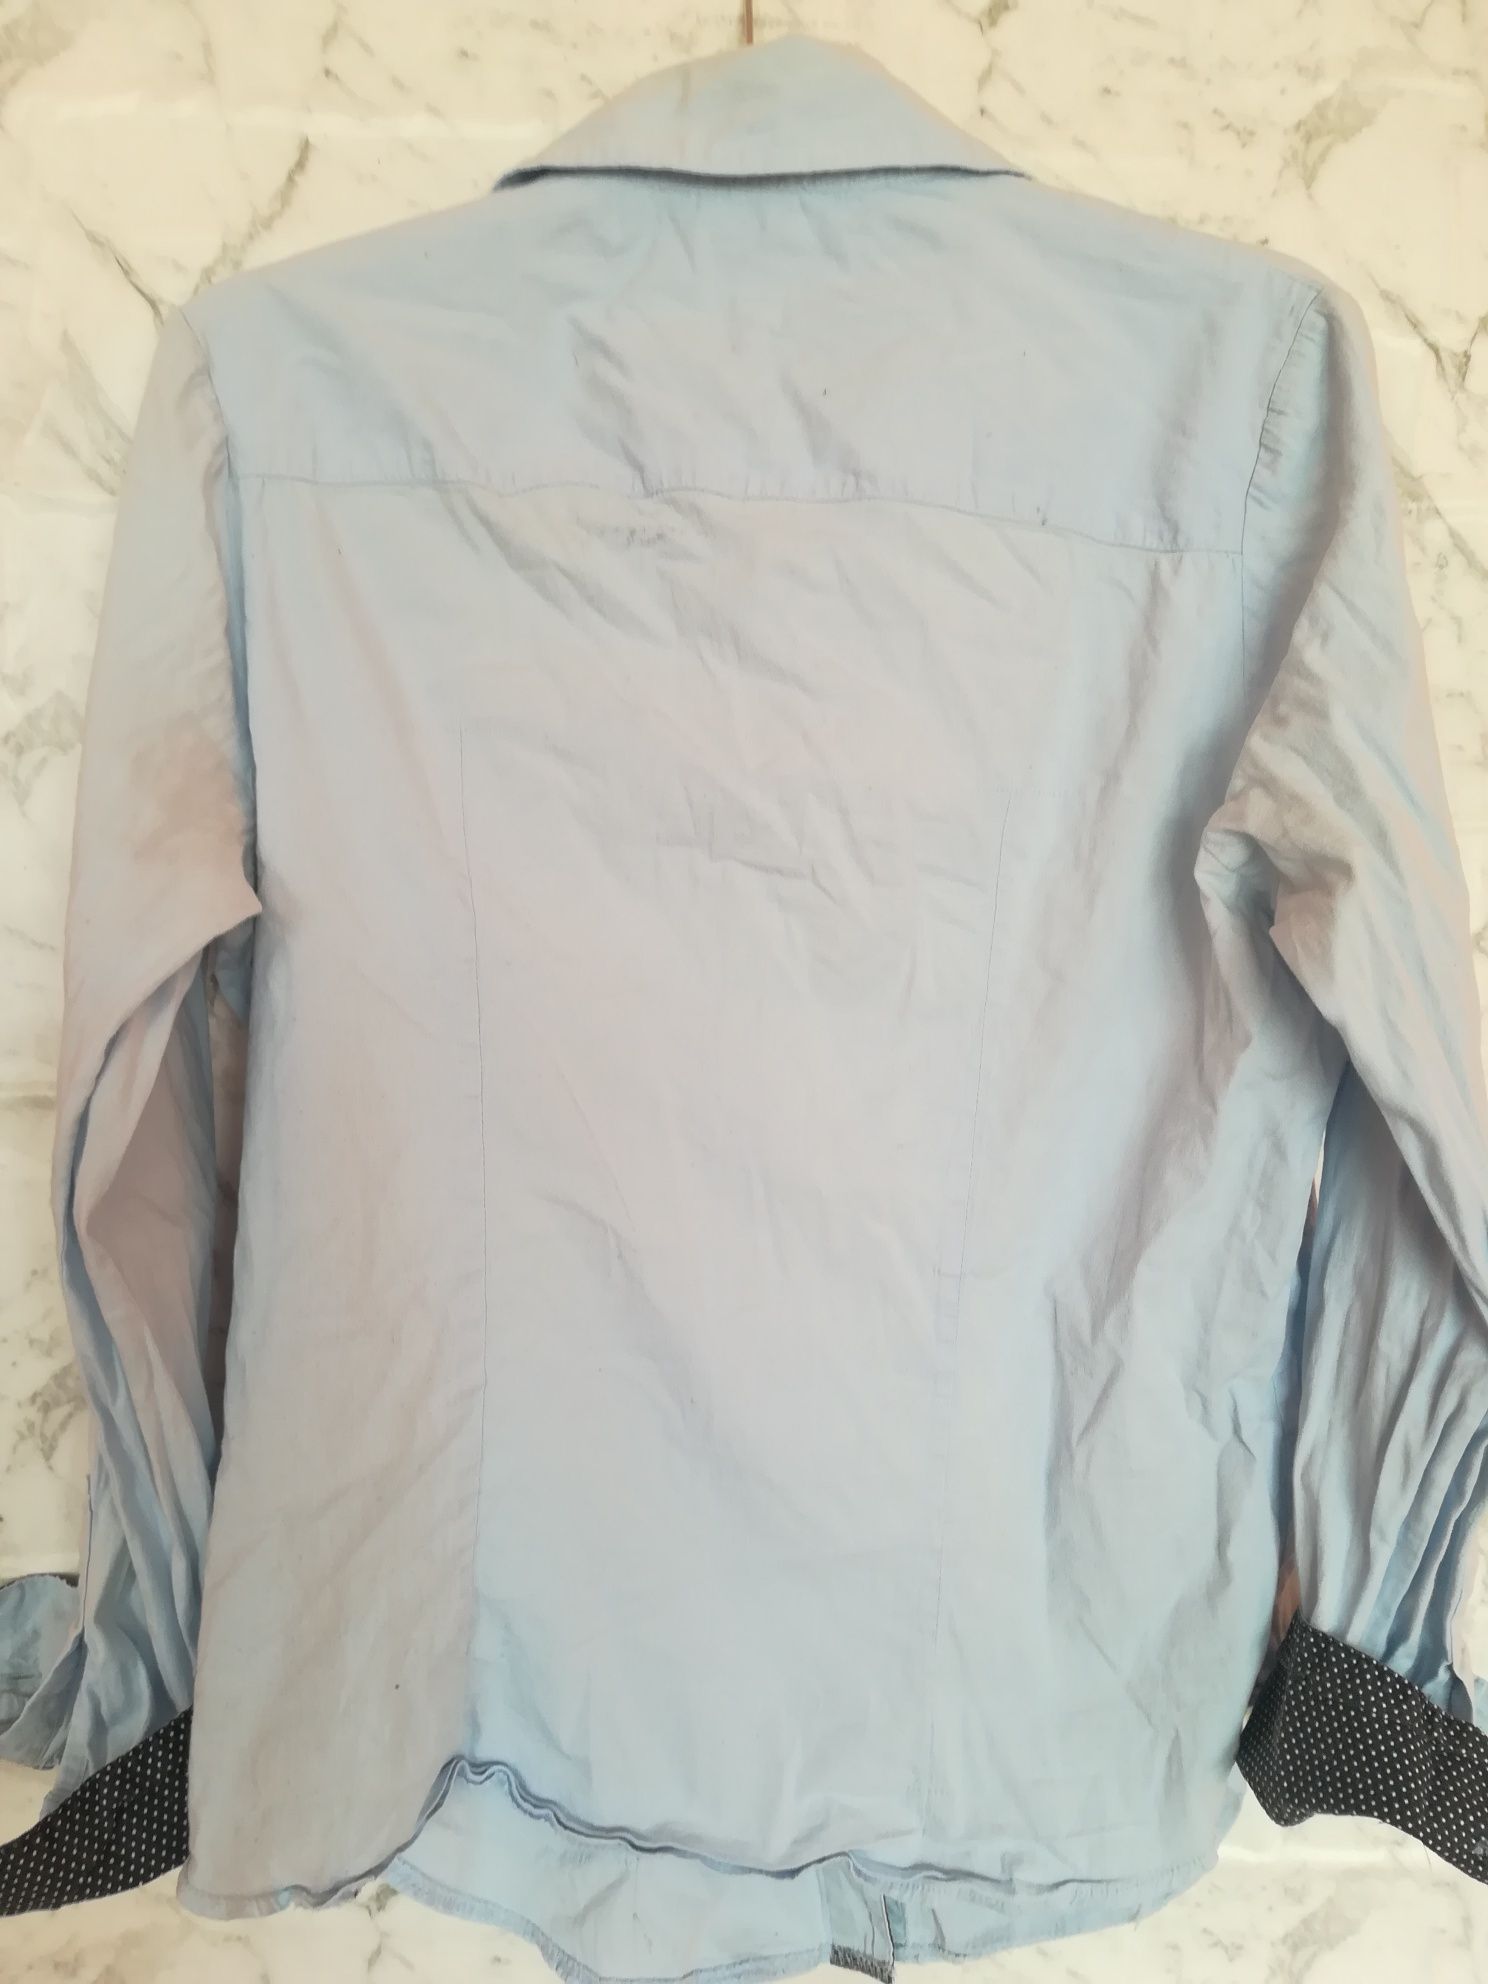 LG COLLECTION błękitna koszula damsa biurowa mankiety w kropki S M 368